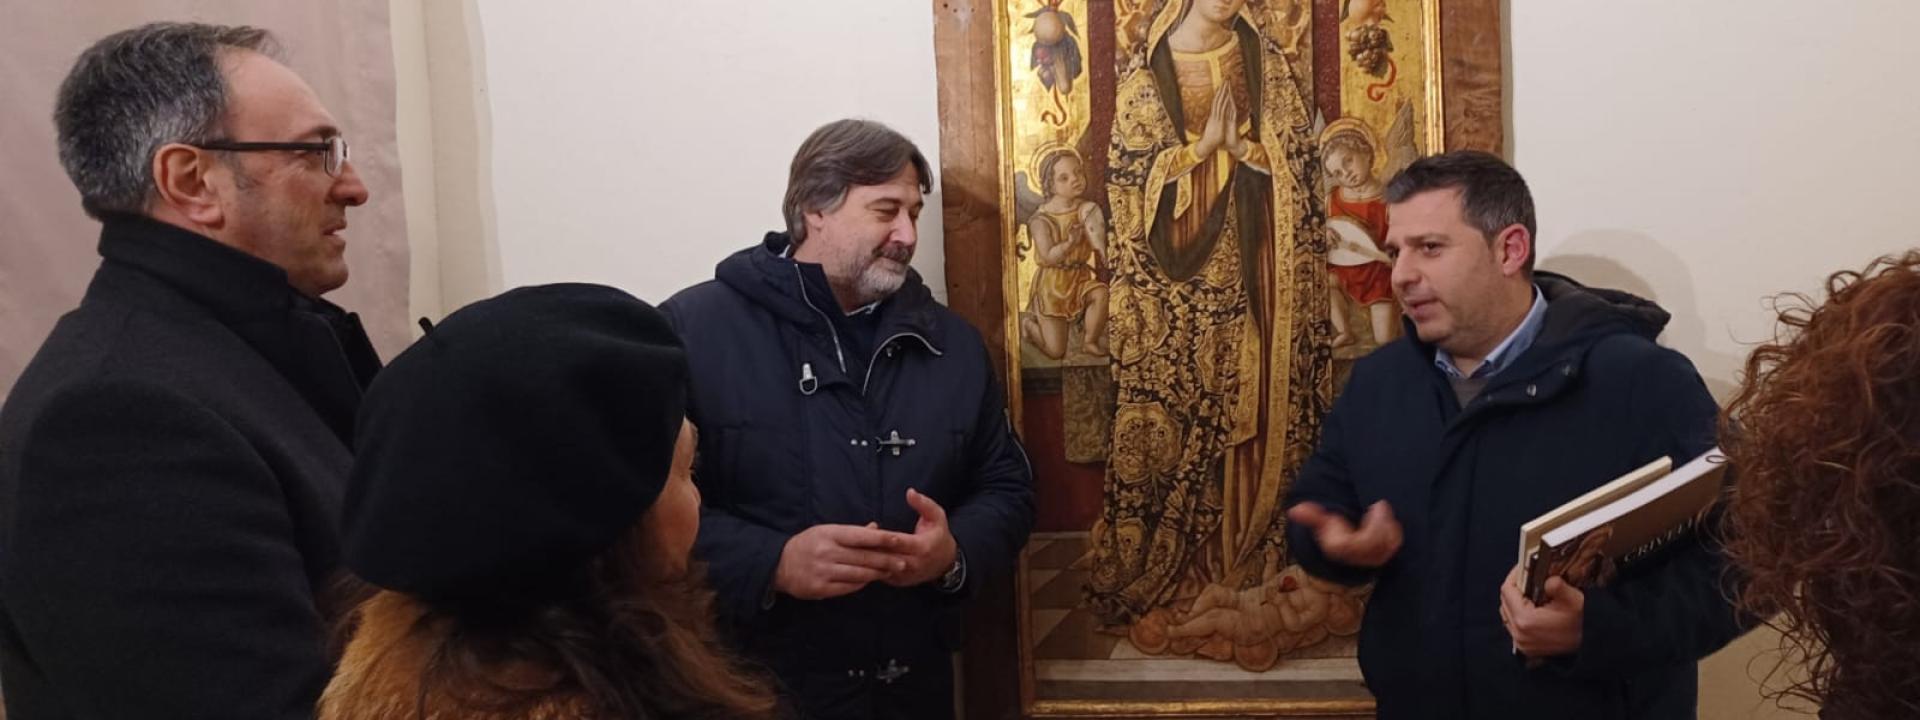 Marche - Sarnano itinerario meraviglioso: conferenza di Delpriori dedicata alla Madonna del Crivelli